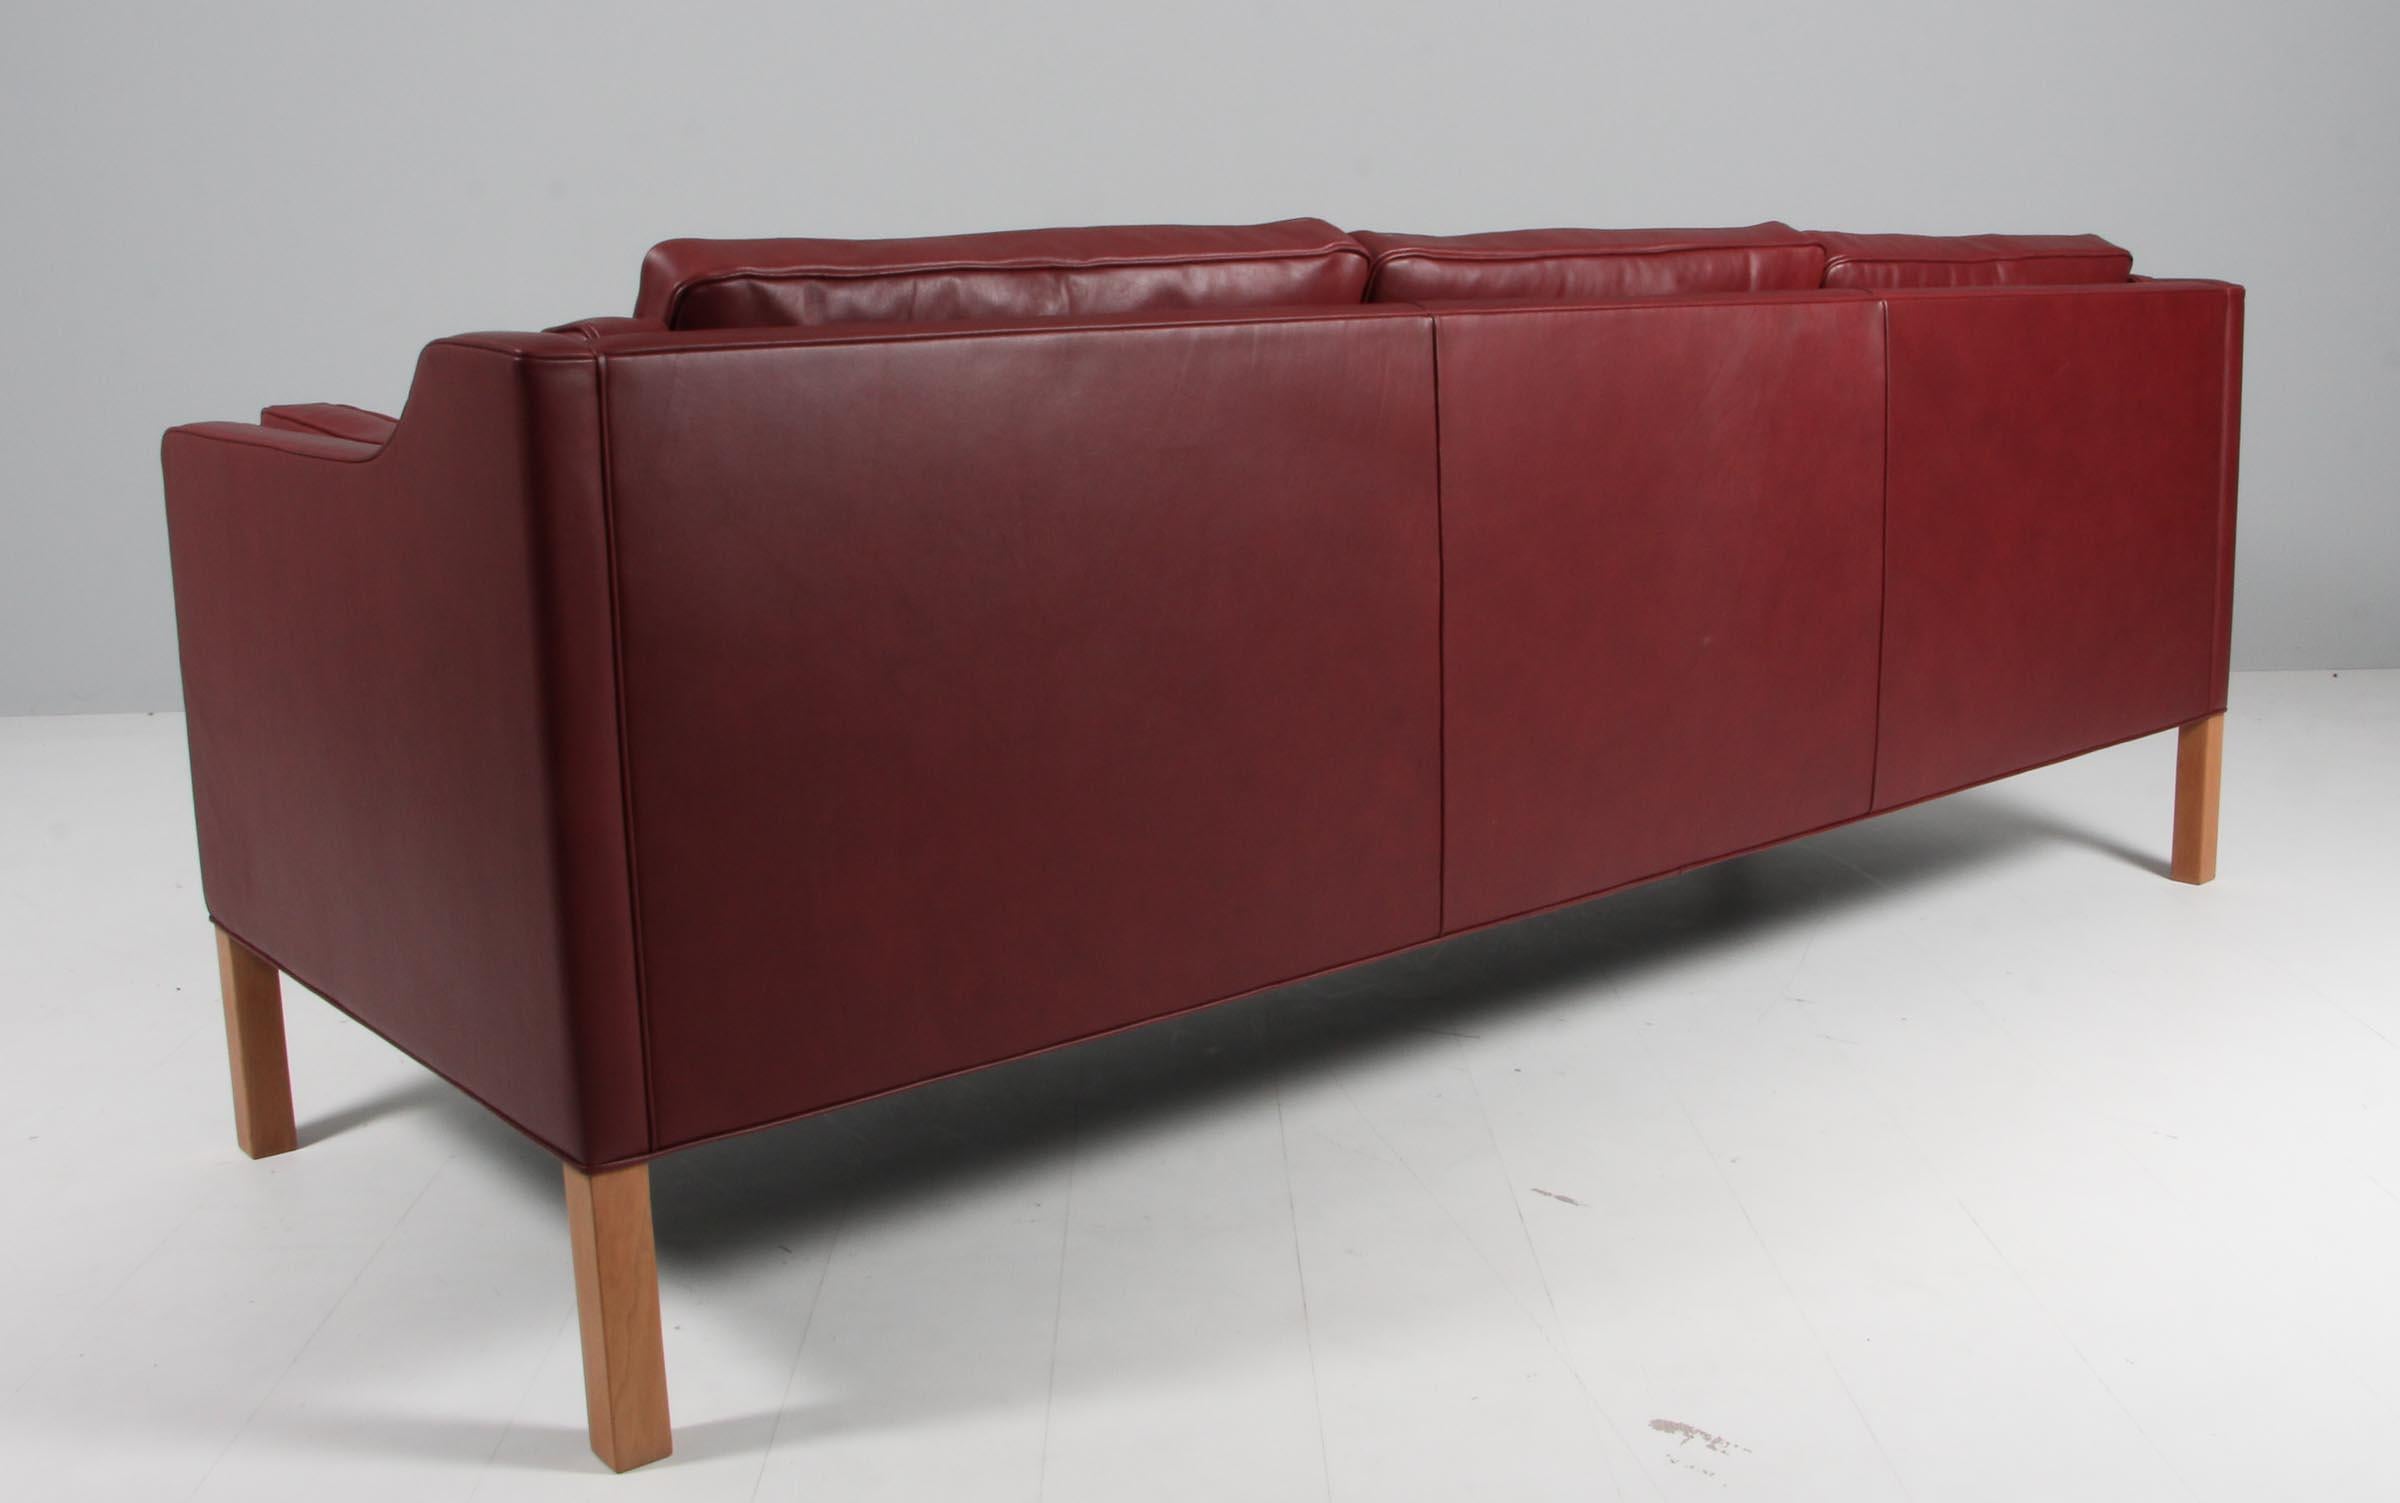 Børge Mogensen Dreisitzer-Sofa, neu gepolstert mit indisch rotem Elegance-Anilinleder.

Beine aus Teakholz.

Modell 2213, hergestellt von Fredericia Furniture.